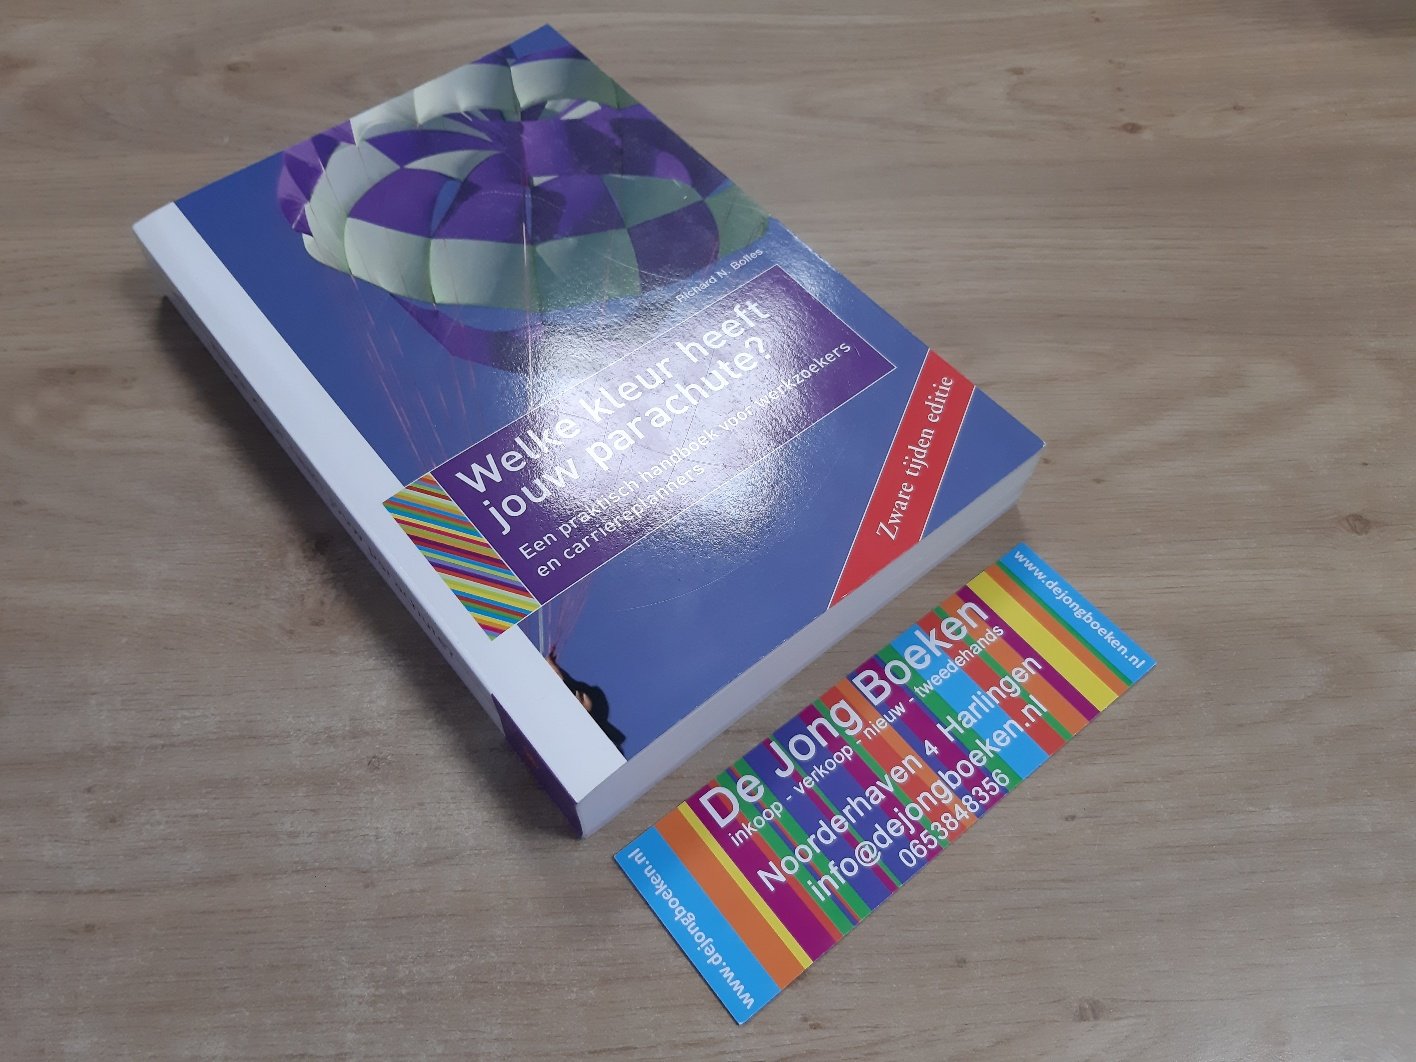 Bolles, Richard N - Welke kleur heeft jouw parachute? 2009-2010 / een praktisch handboek voor werkzoekers en carriereplanners